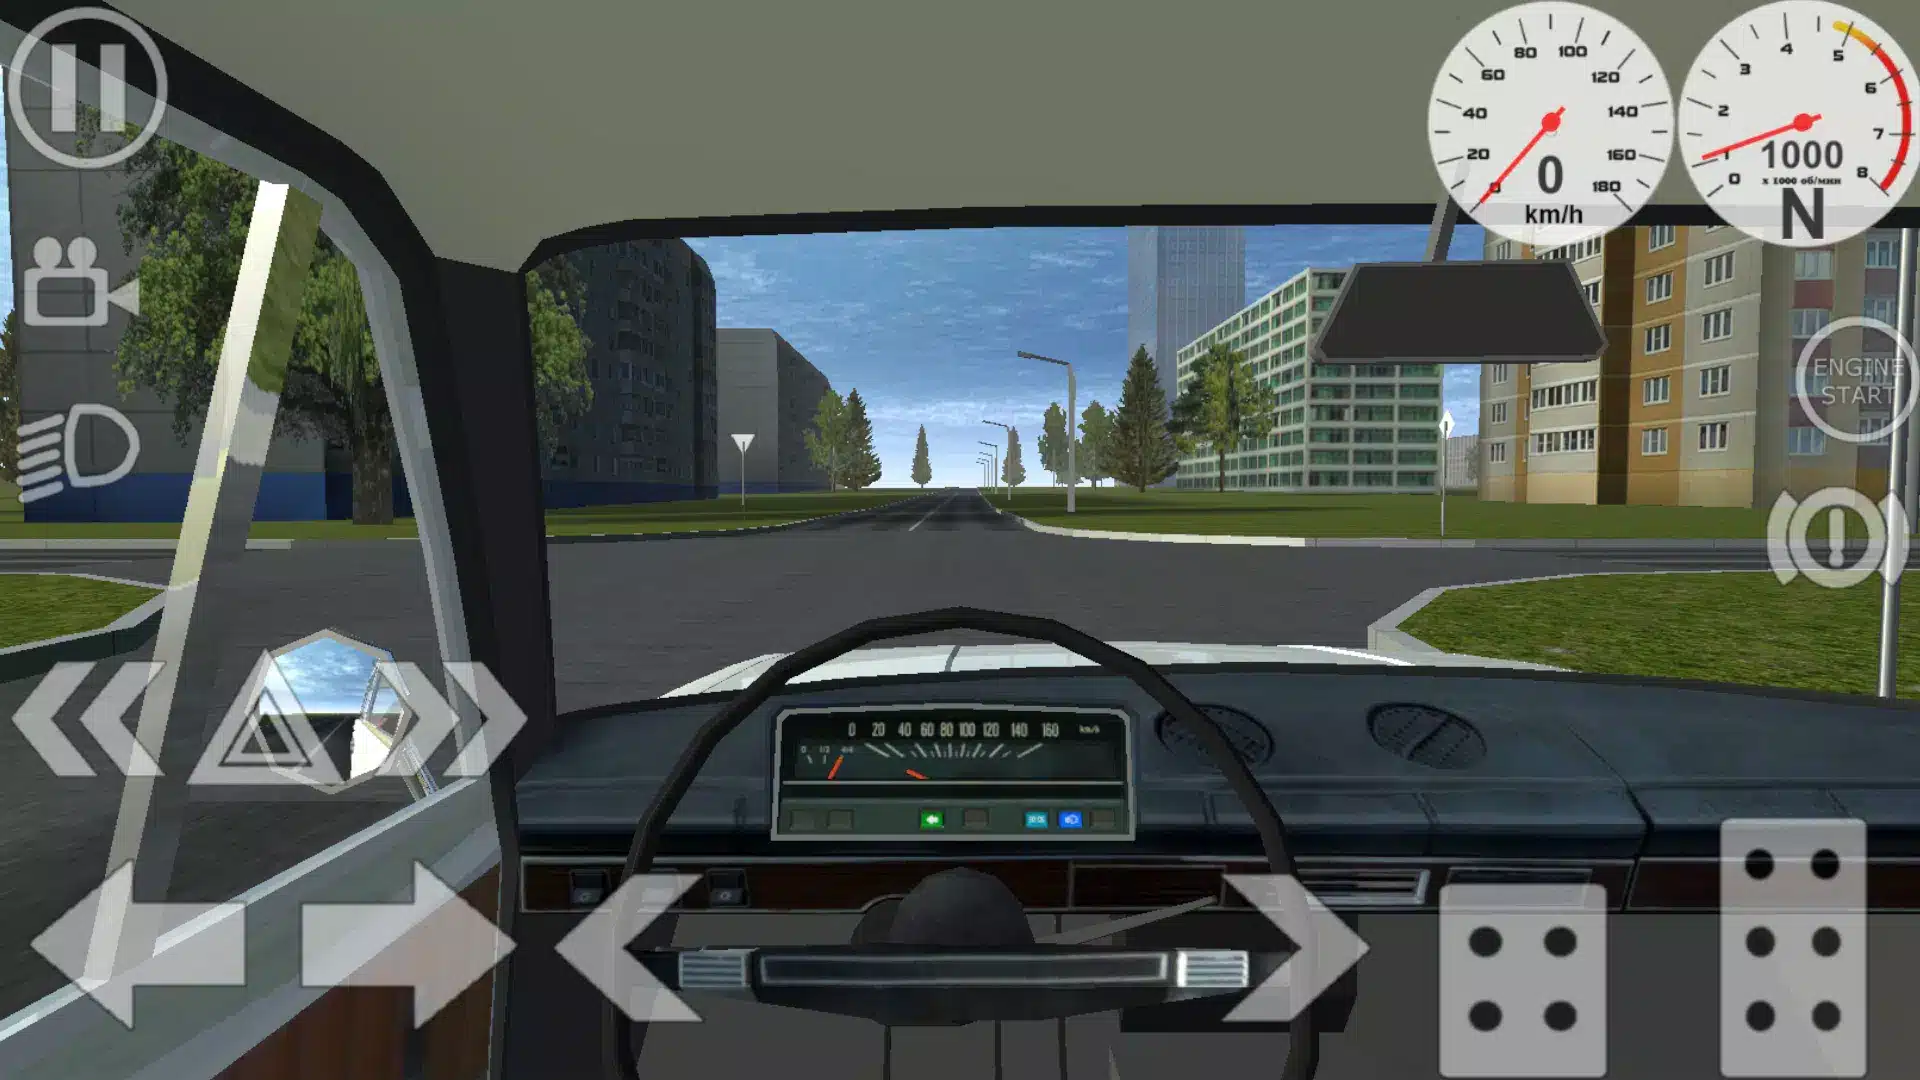 Simple Car Crash Physics Sim Image 7